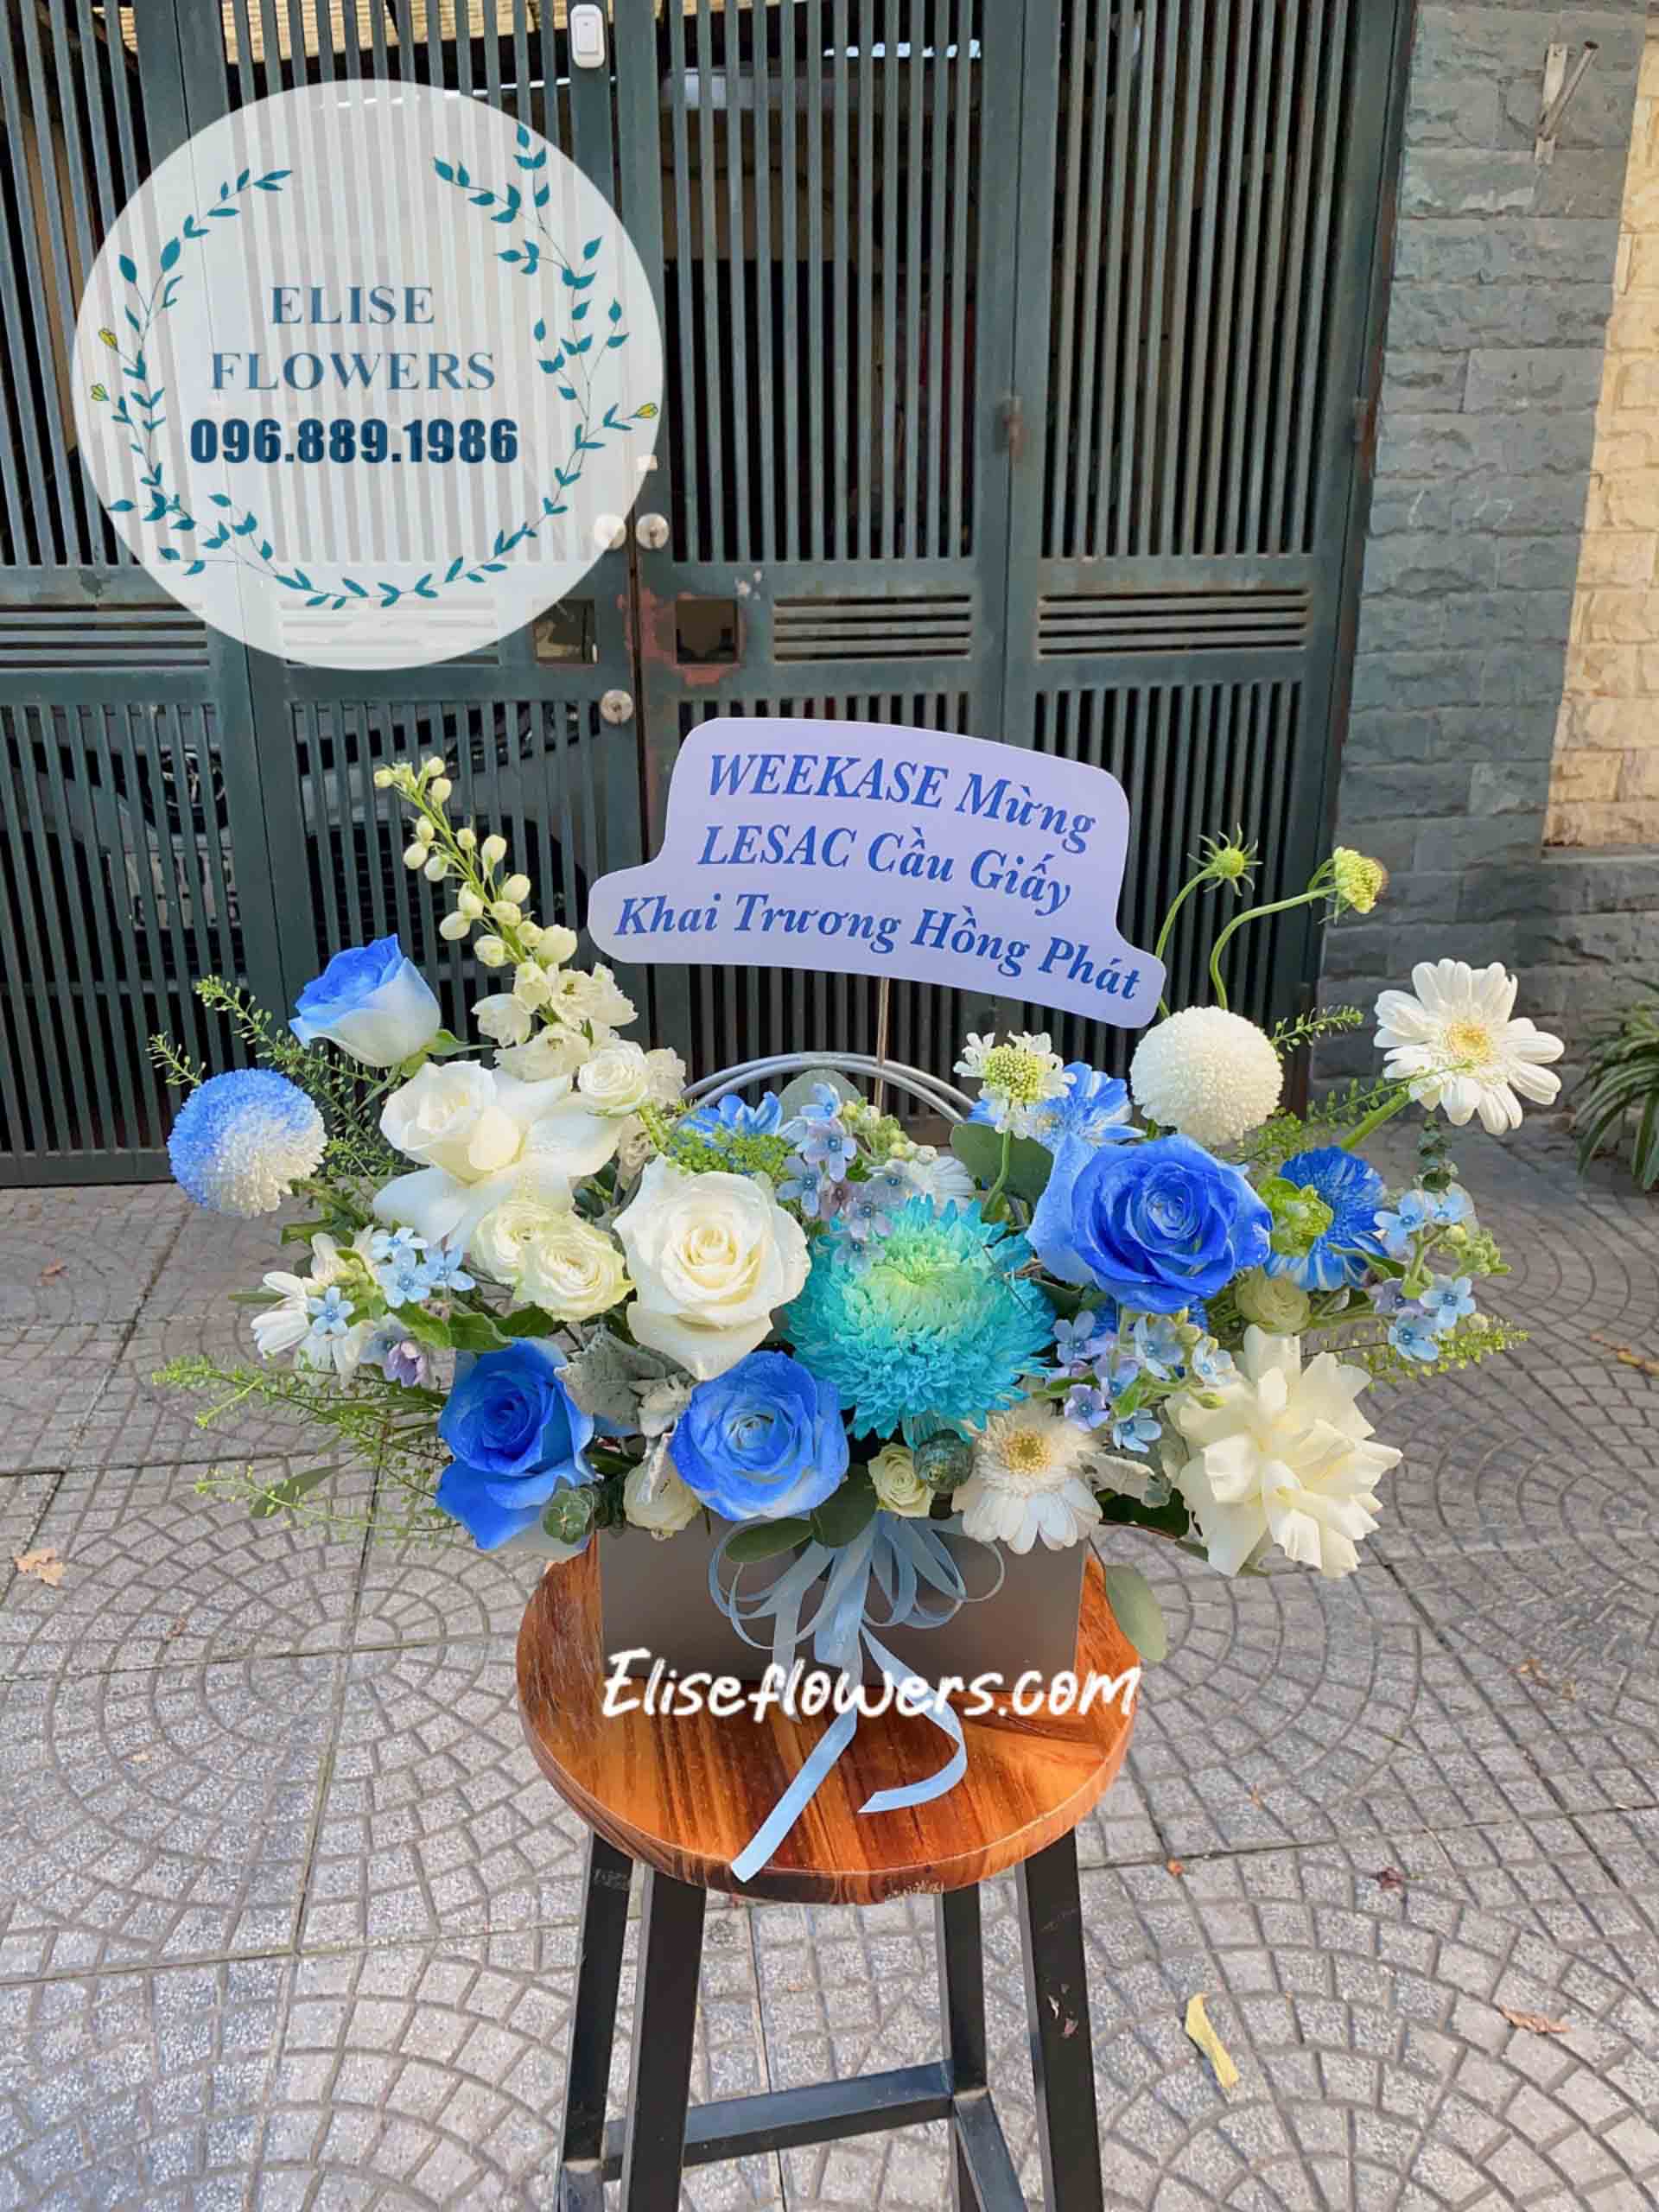 Túi hoa sinh nhật cao cấp. Địa chỉ đặt hoa sinh nhật cao cấp tại quận Hoàn Kiếm - Hà Nội